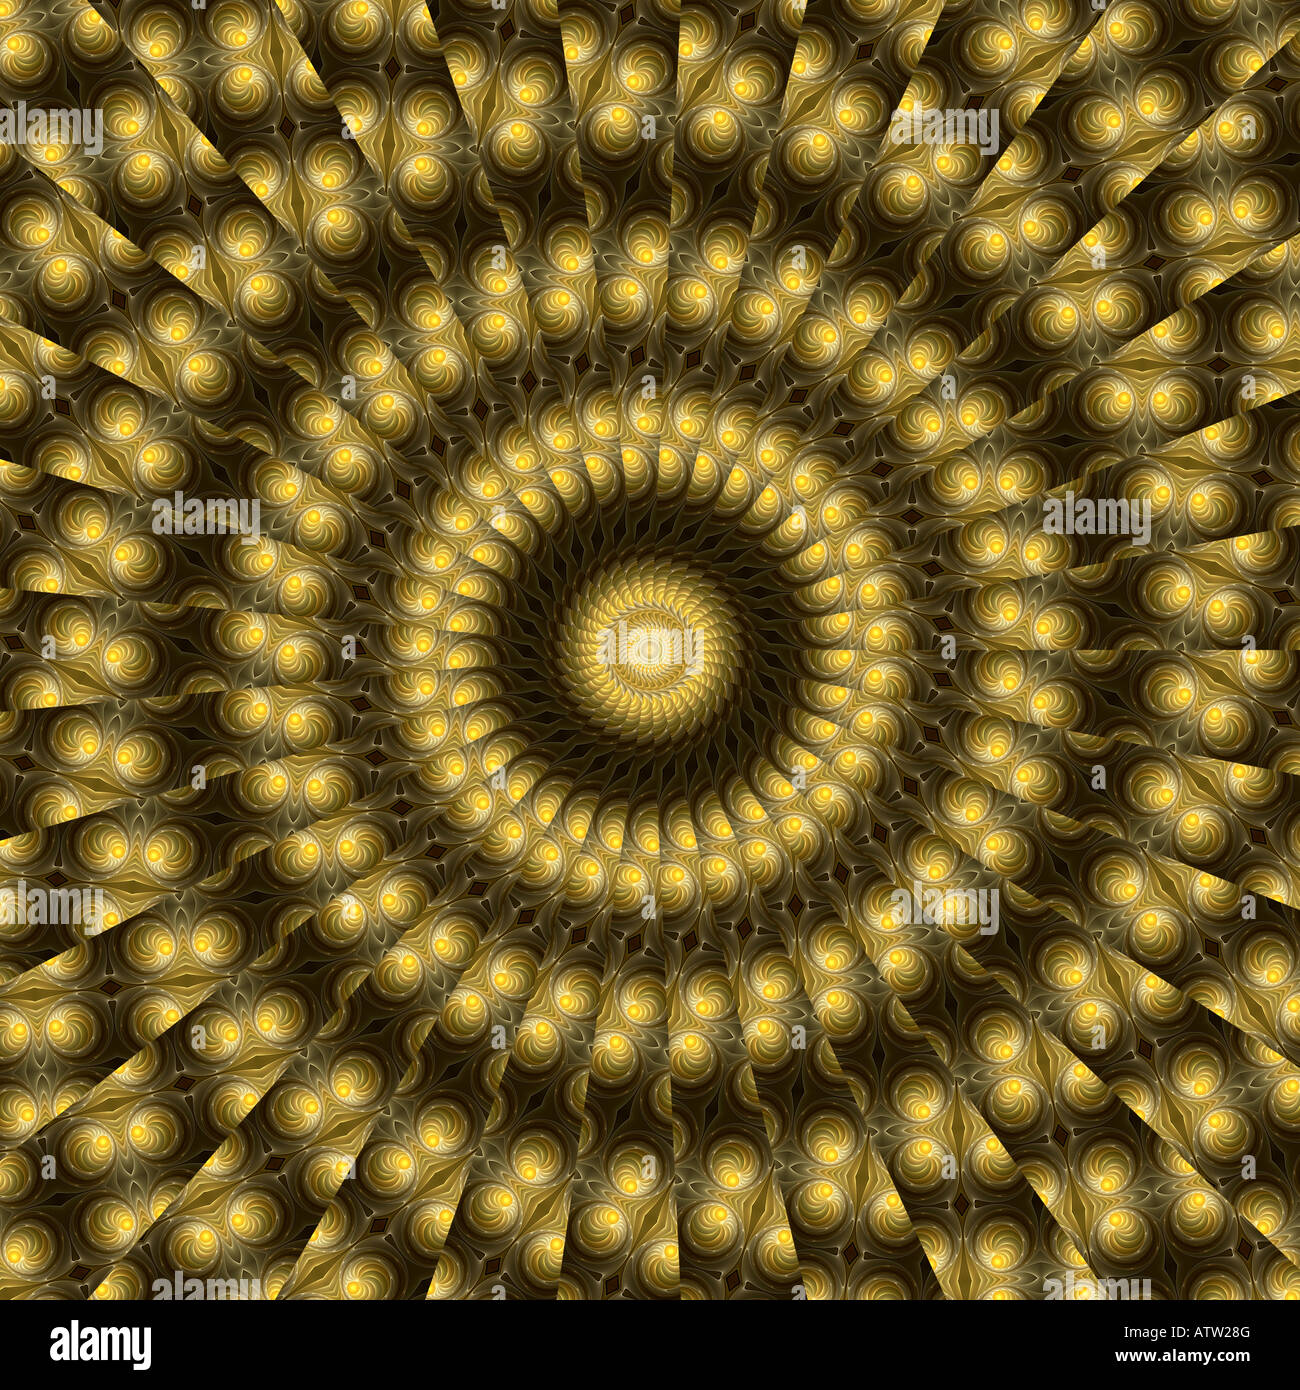 Abstract frattale che assomiglia ad una spirale dorata keleidoscope Foto Stock